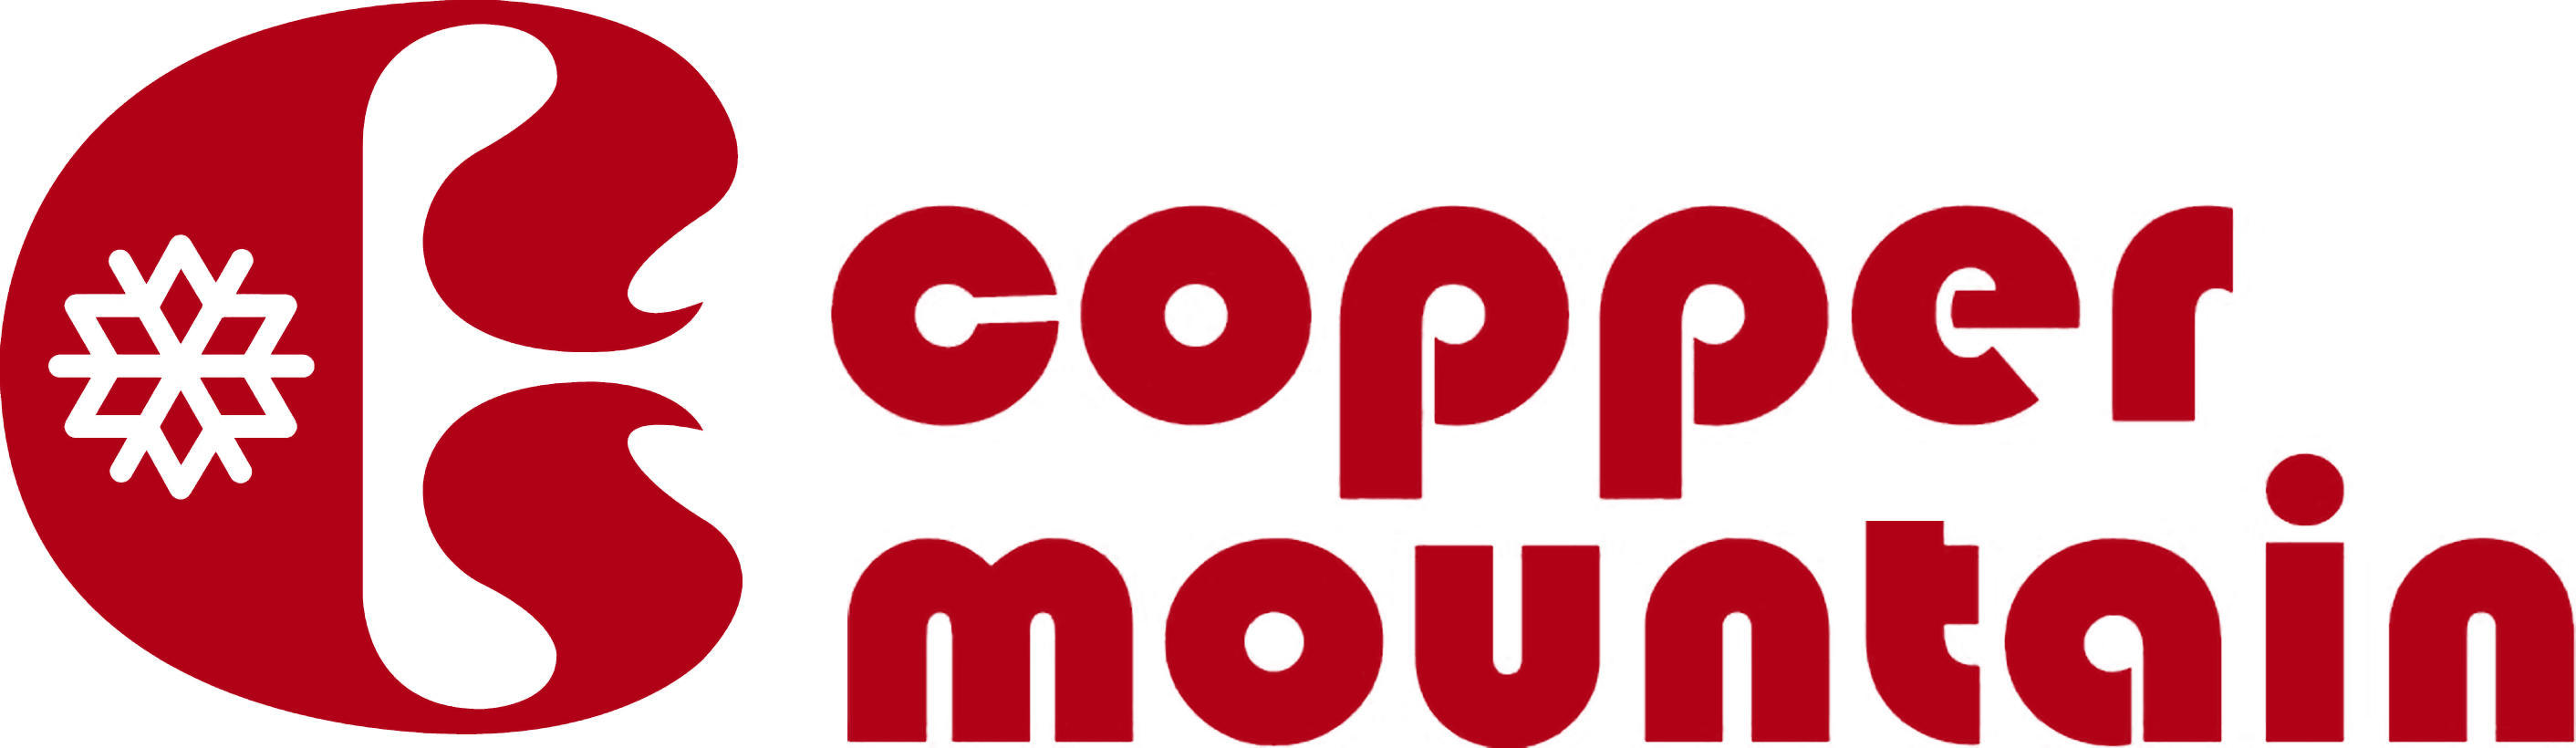 Copper Mountain Logo - Copper Mountain Resort Schedule & Reviews | ActivityHero